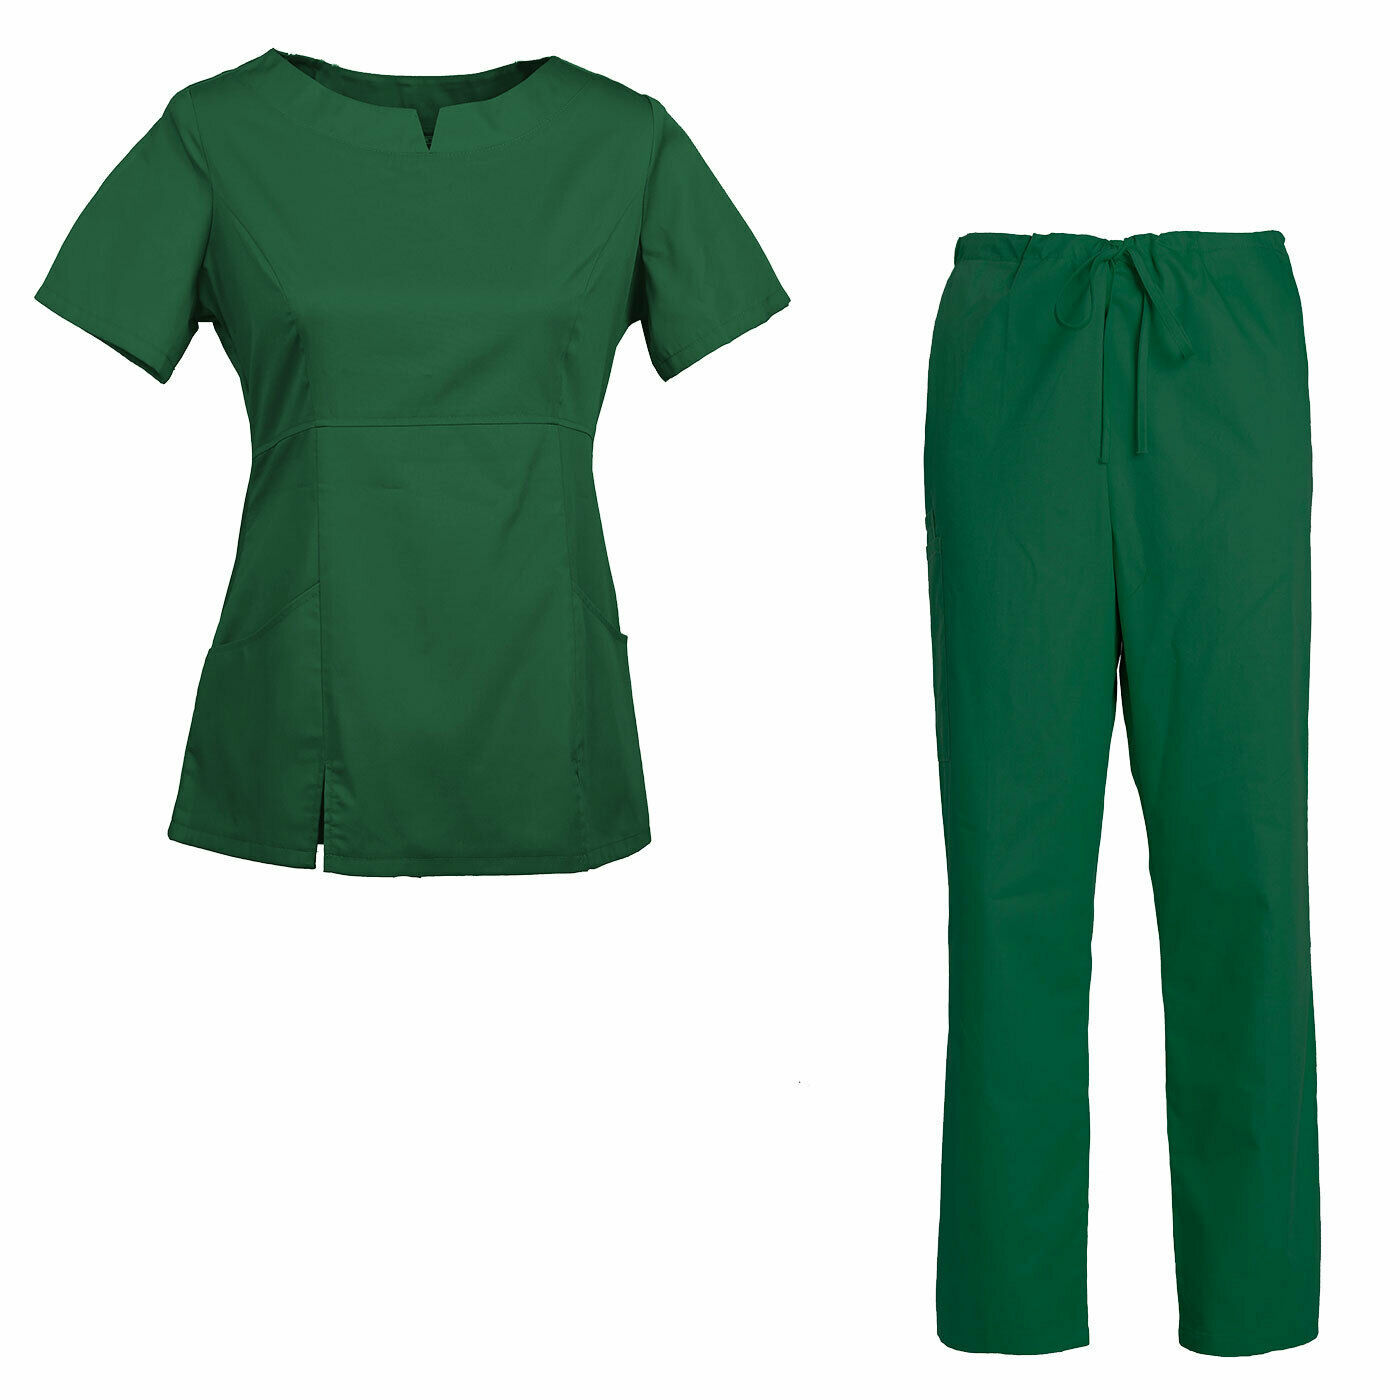 Women's Scrub Set Medical Nursing Uniform Top and Drawstring Cargo Pants - $38.98